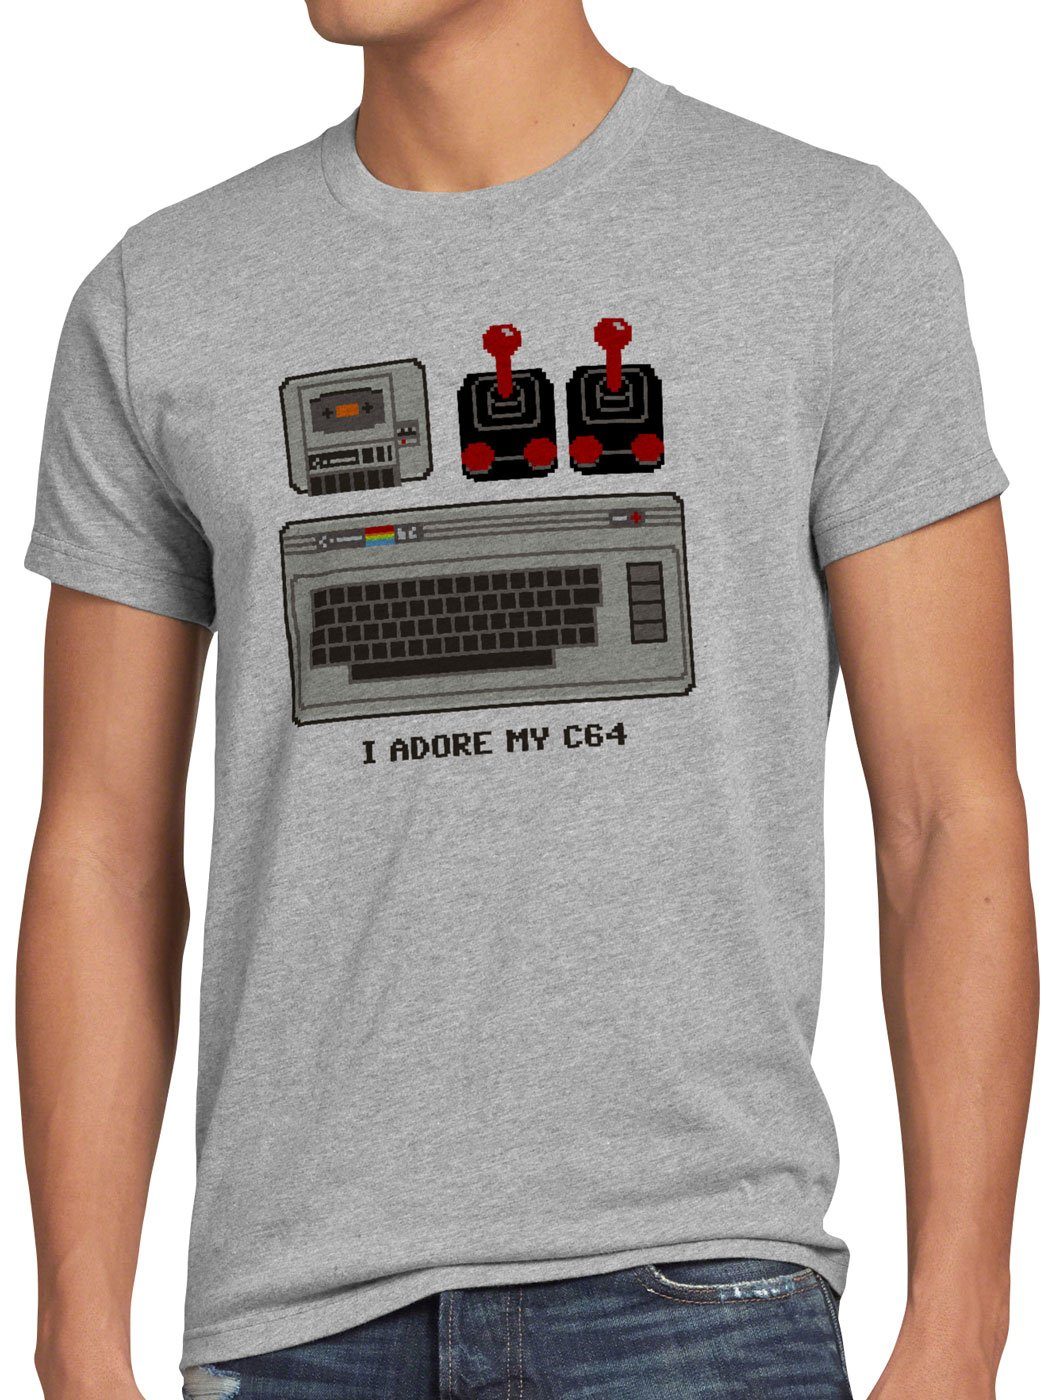 I style3 Adore Herren My heimcomputer classic Print-Shirt grau meliert T-Shirt C64